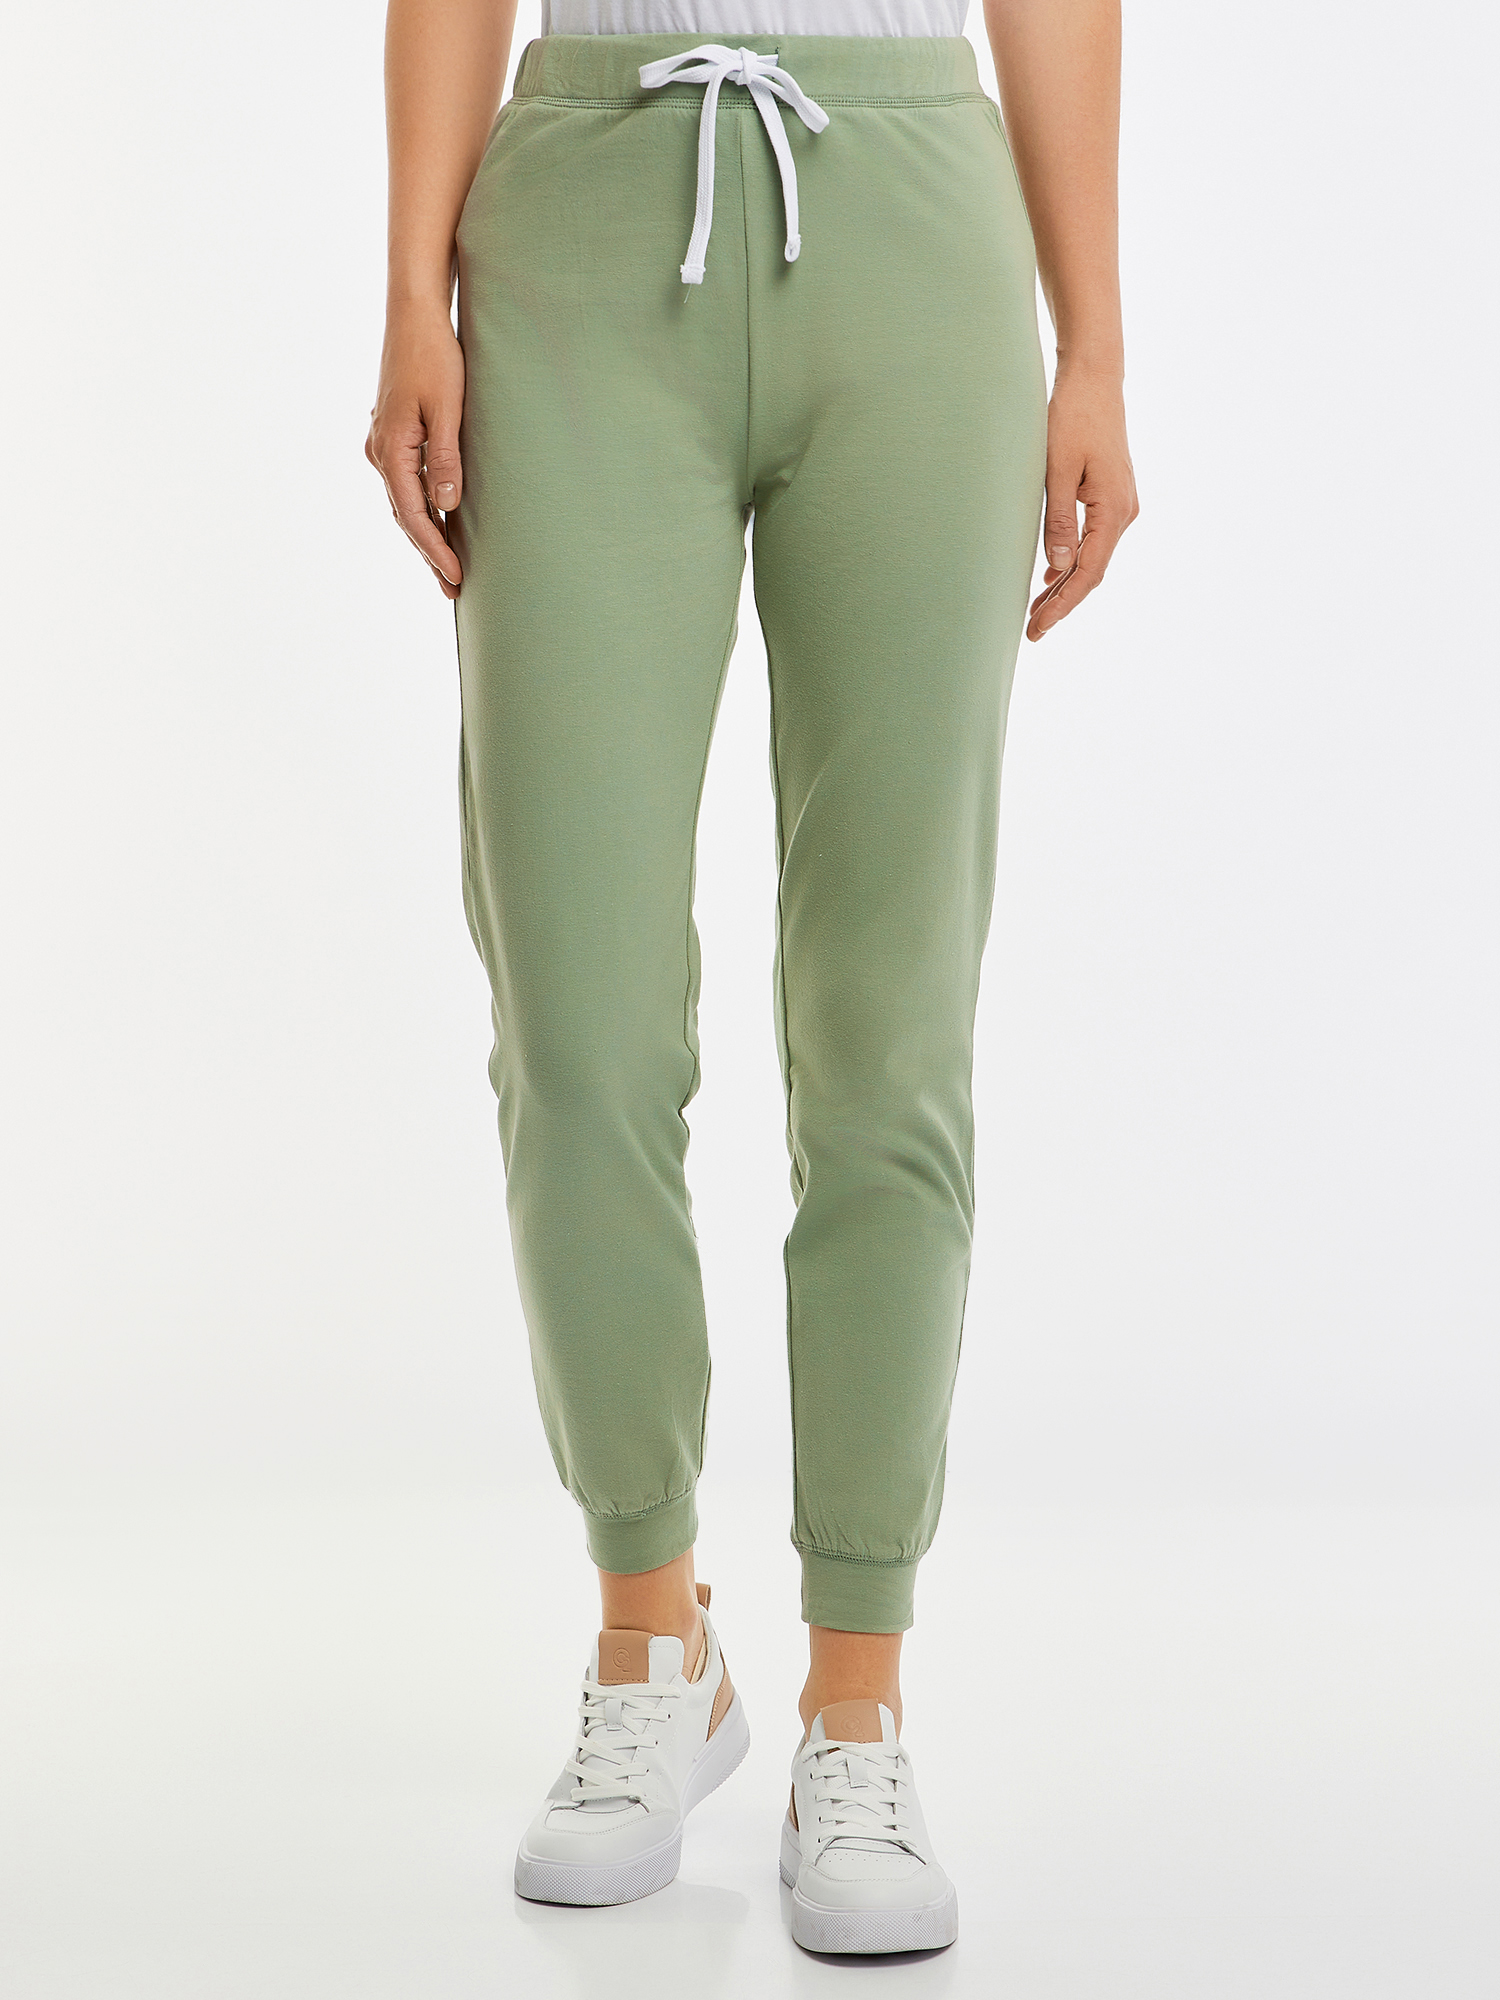 Спортивные брюки женские oodji 16701082 зеленые XL